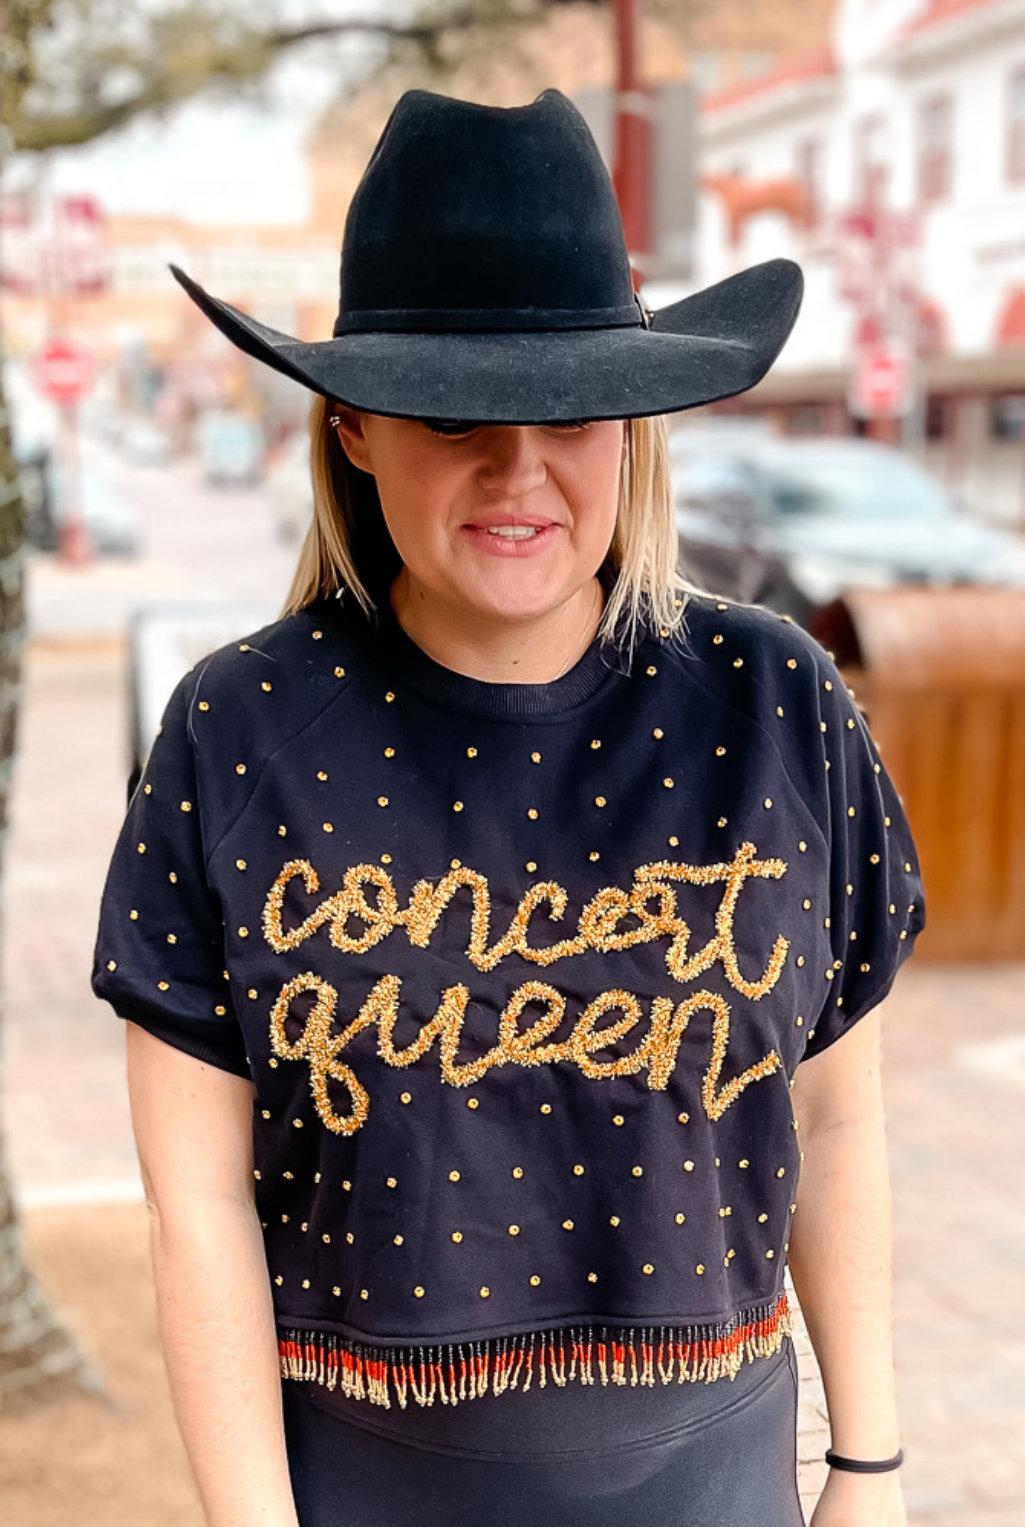 Queen Of Sparkles - Concert Queen